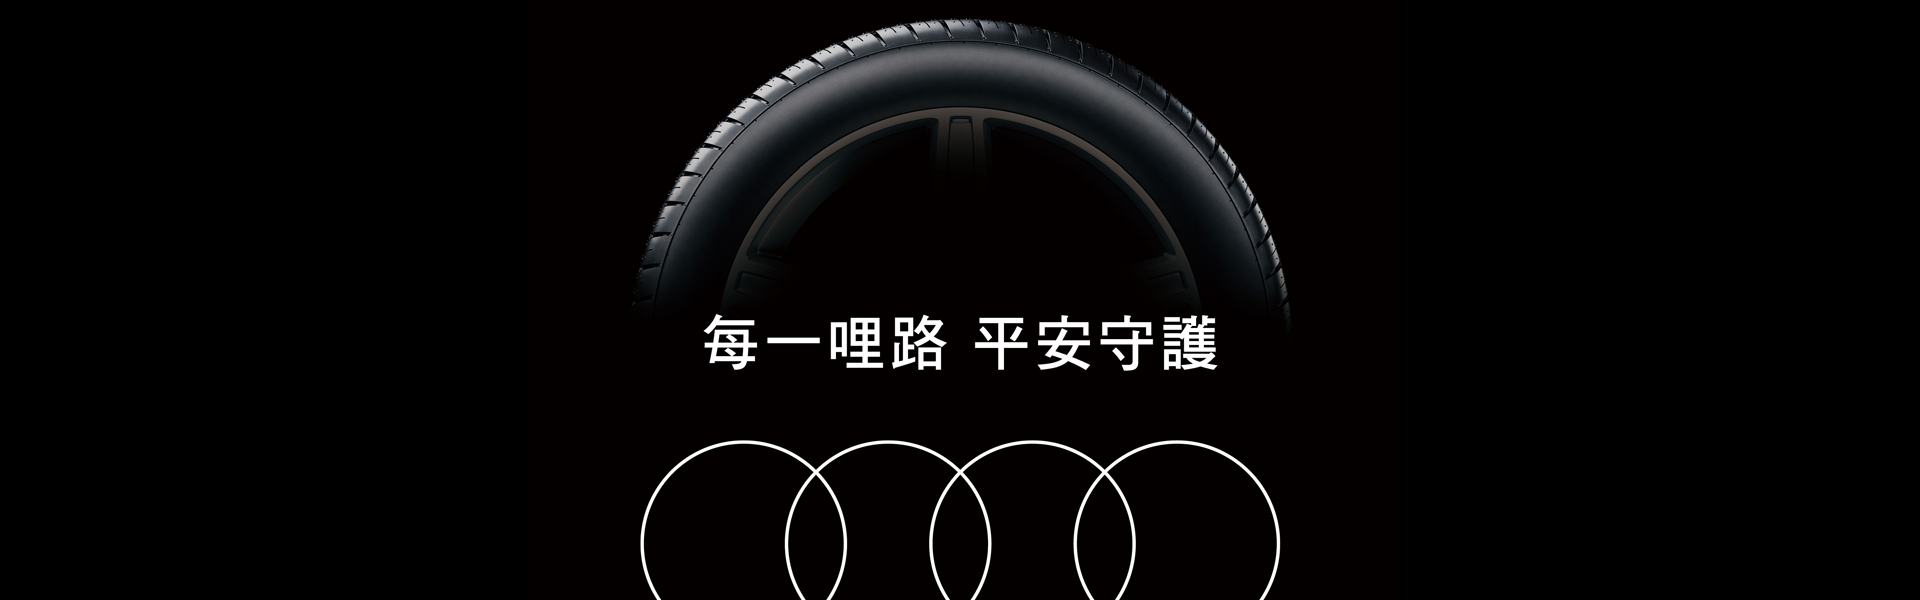 Tire-Warranty_1920x600.png